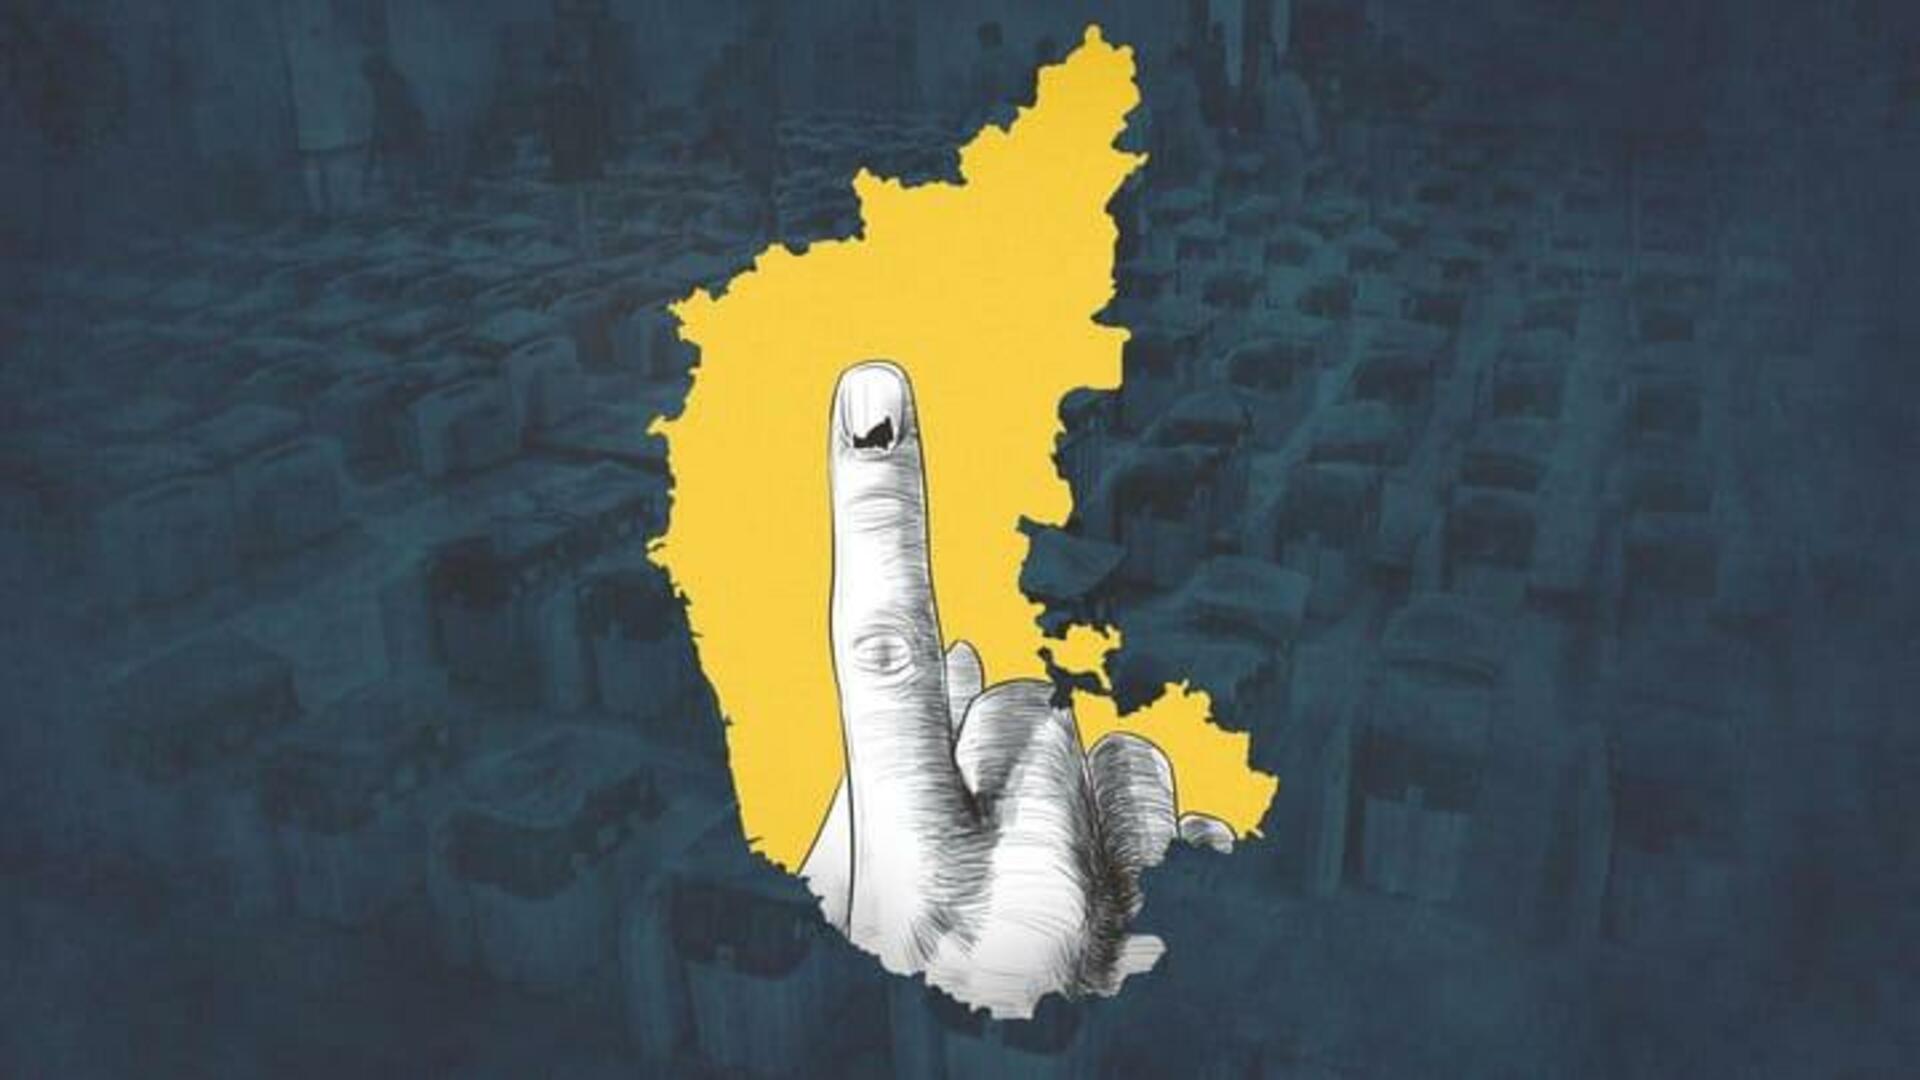 கர்நாடக தேர்தல் 2023: வாக்கு எண்ணிக்கை பாதி முடிந்துவிட்டது, முன்னிலையில் இருப்பது யார்?